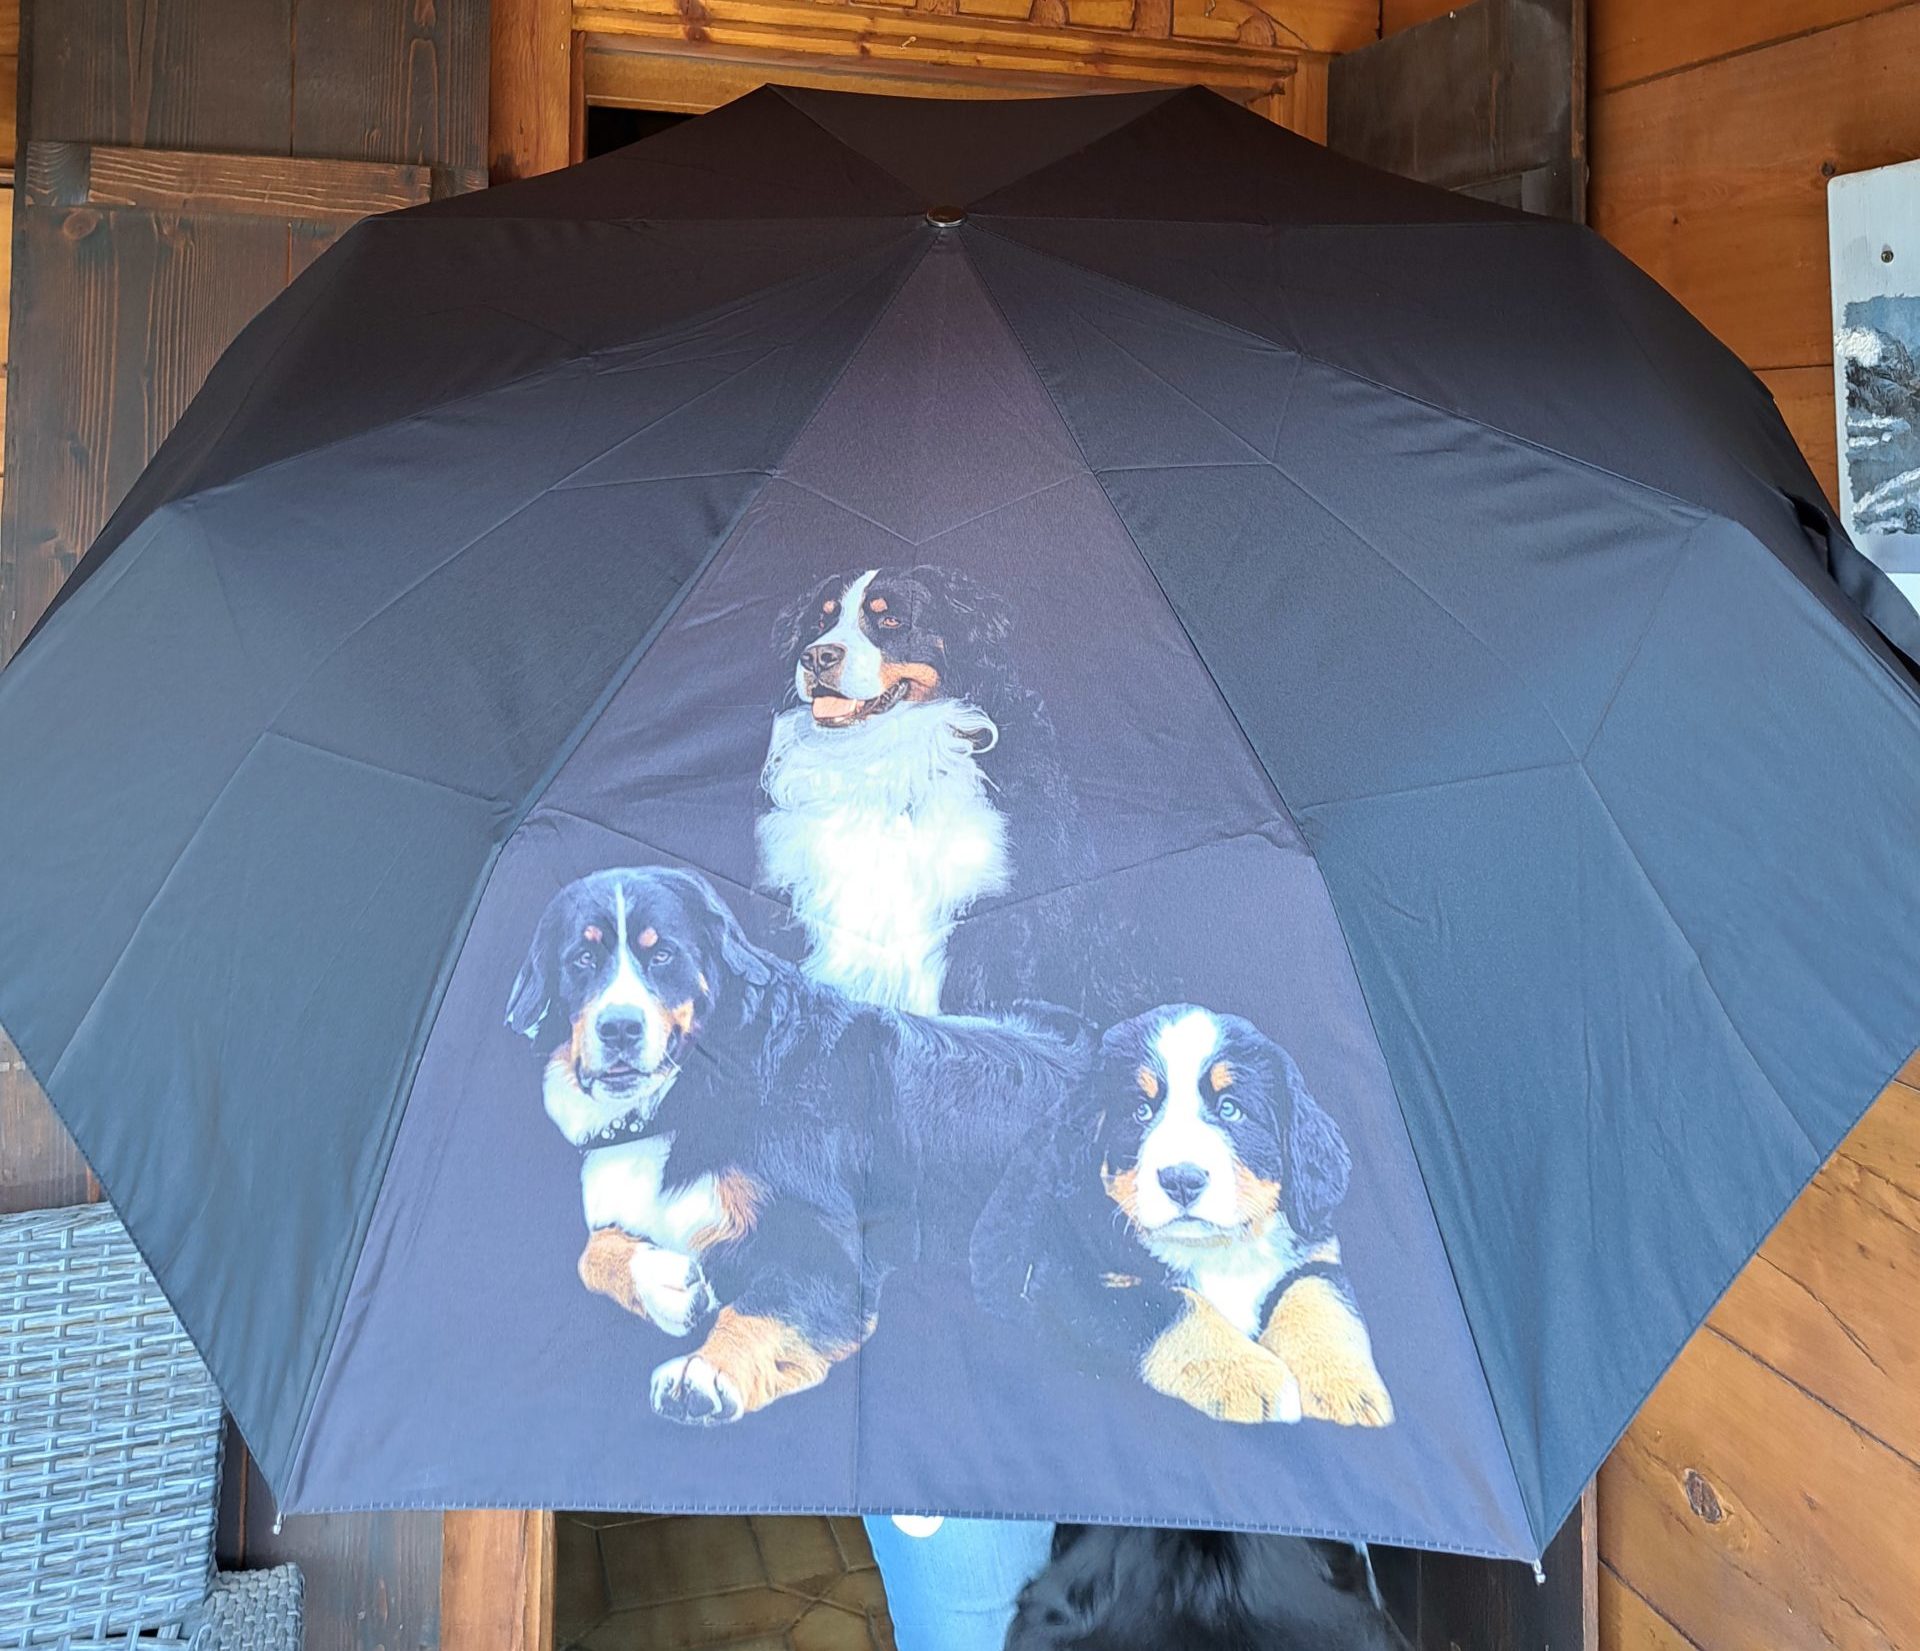 Parapluie Tandem anti-retournement • Nature & Découvertes Suisse